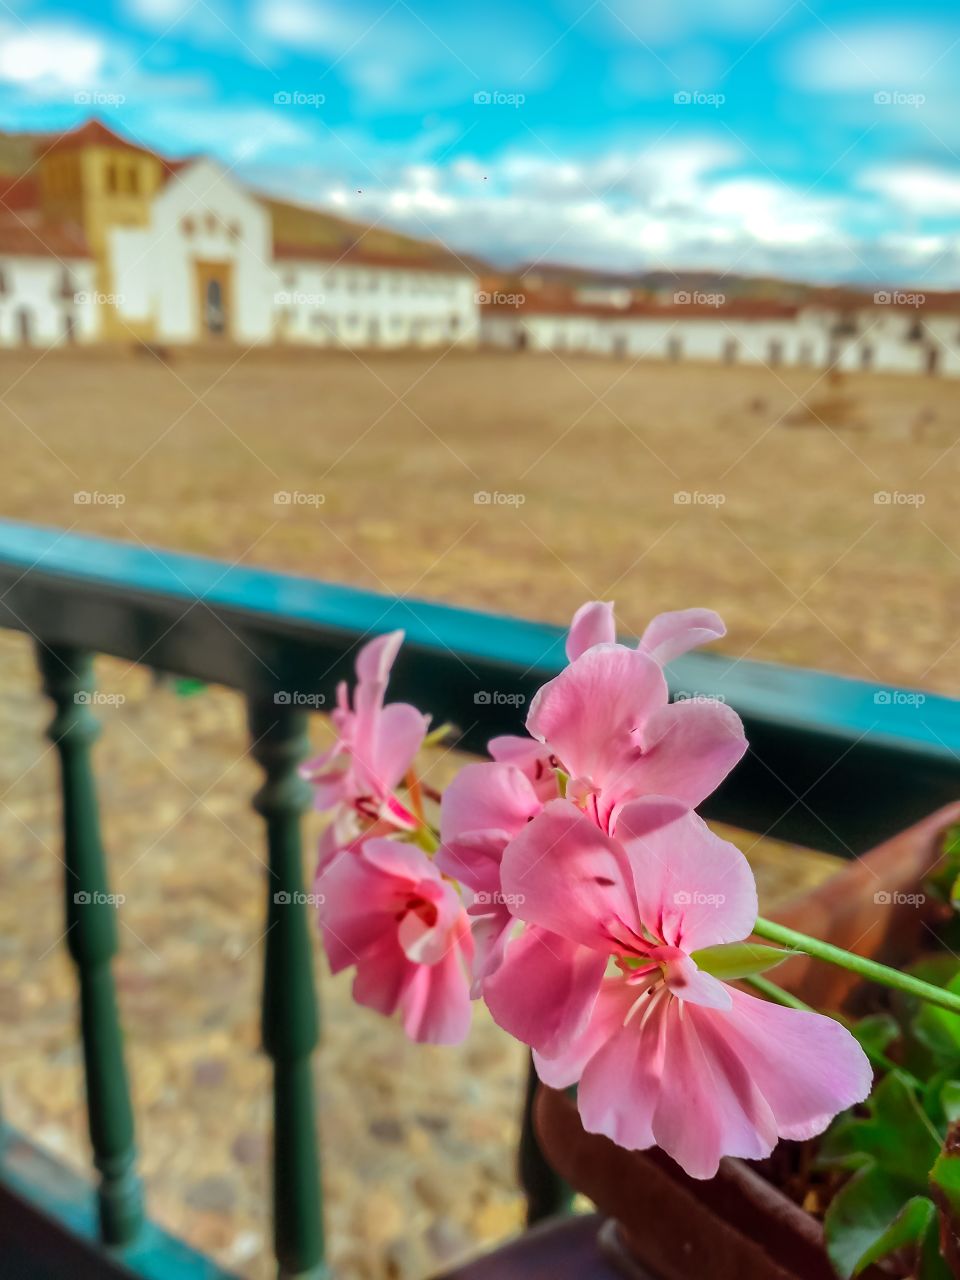 Hermosas flores rosadas en un balcón con vista hacia la plaza principal de Villa de Leyva Boyacá Colombia en un atardecer durante la cuarentena en mayo de 2020. Balcony, pink flowers, quarantine